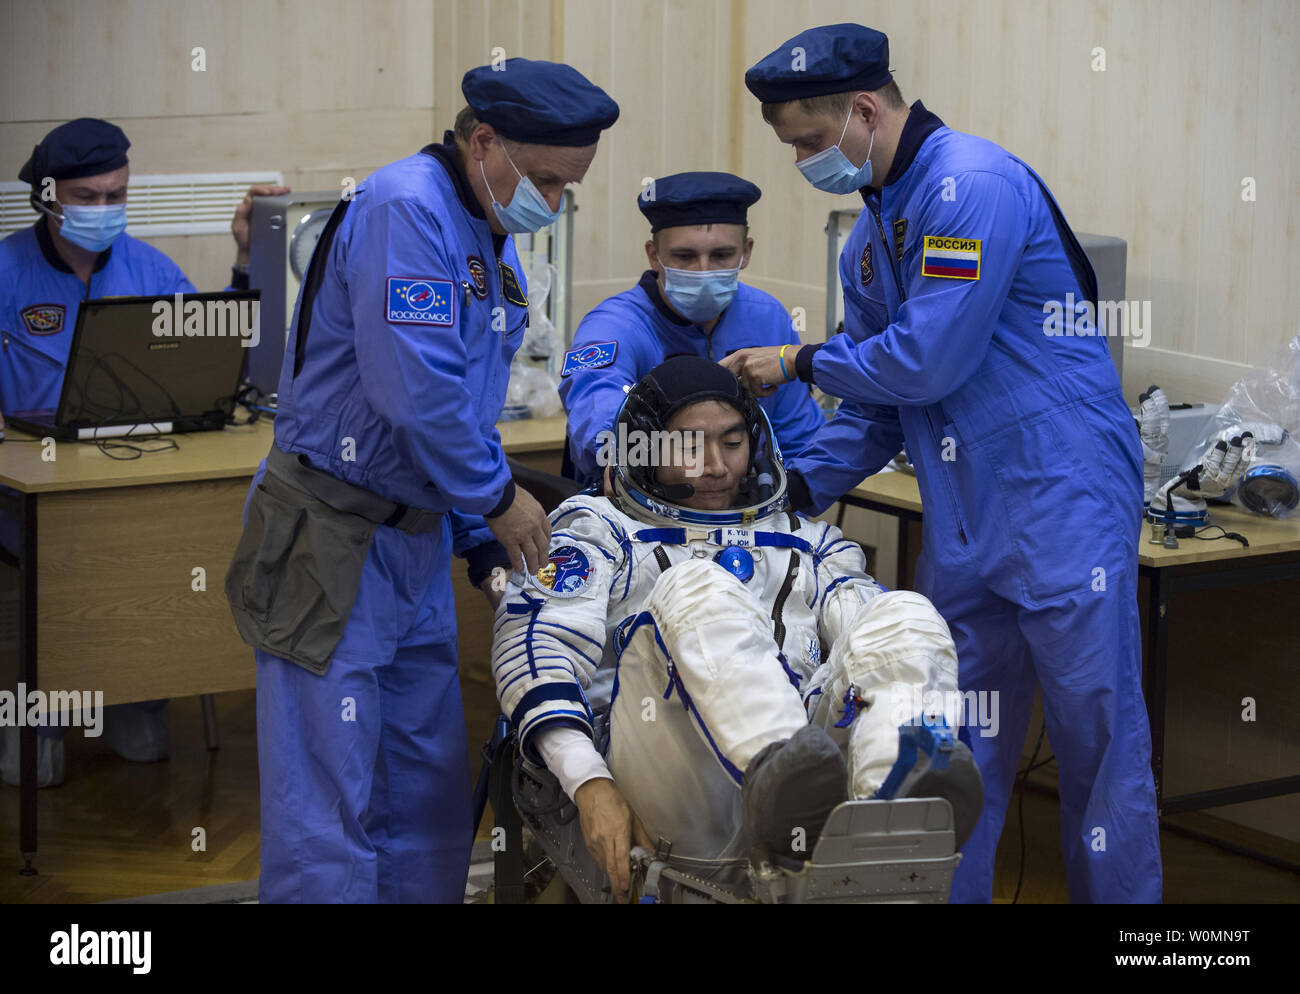 Expedition 44 Tecnico di volo Kimiya Yui della Japan Aerospace Exploration Agency (JAXA) ha il suo russo Sokol tuta controllato della pressione nella preparazione per il lancio a bordo della Soyuz TMA-17M navicella spaziale su Mercoledì, 22 luglio 2015, presso il cosmodromo di Baikonur in Kazakistan. Lancio del razzo Soyuz è prevista per le prime ore di luglio 23 Cosmodromo di tempo e potrà trasportare Yui e compagni crewmates, Soyuz Commander Oleg Kononenko di l'agenzia Spaziale Federale Russa Roscosmos () e tecnico di volo Kjell Lindgren della NASA, in orbita per iniziare i loro cinque mesi di missione sulla Stazione spaziale internazionale. NA Foto Stock